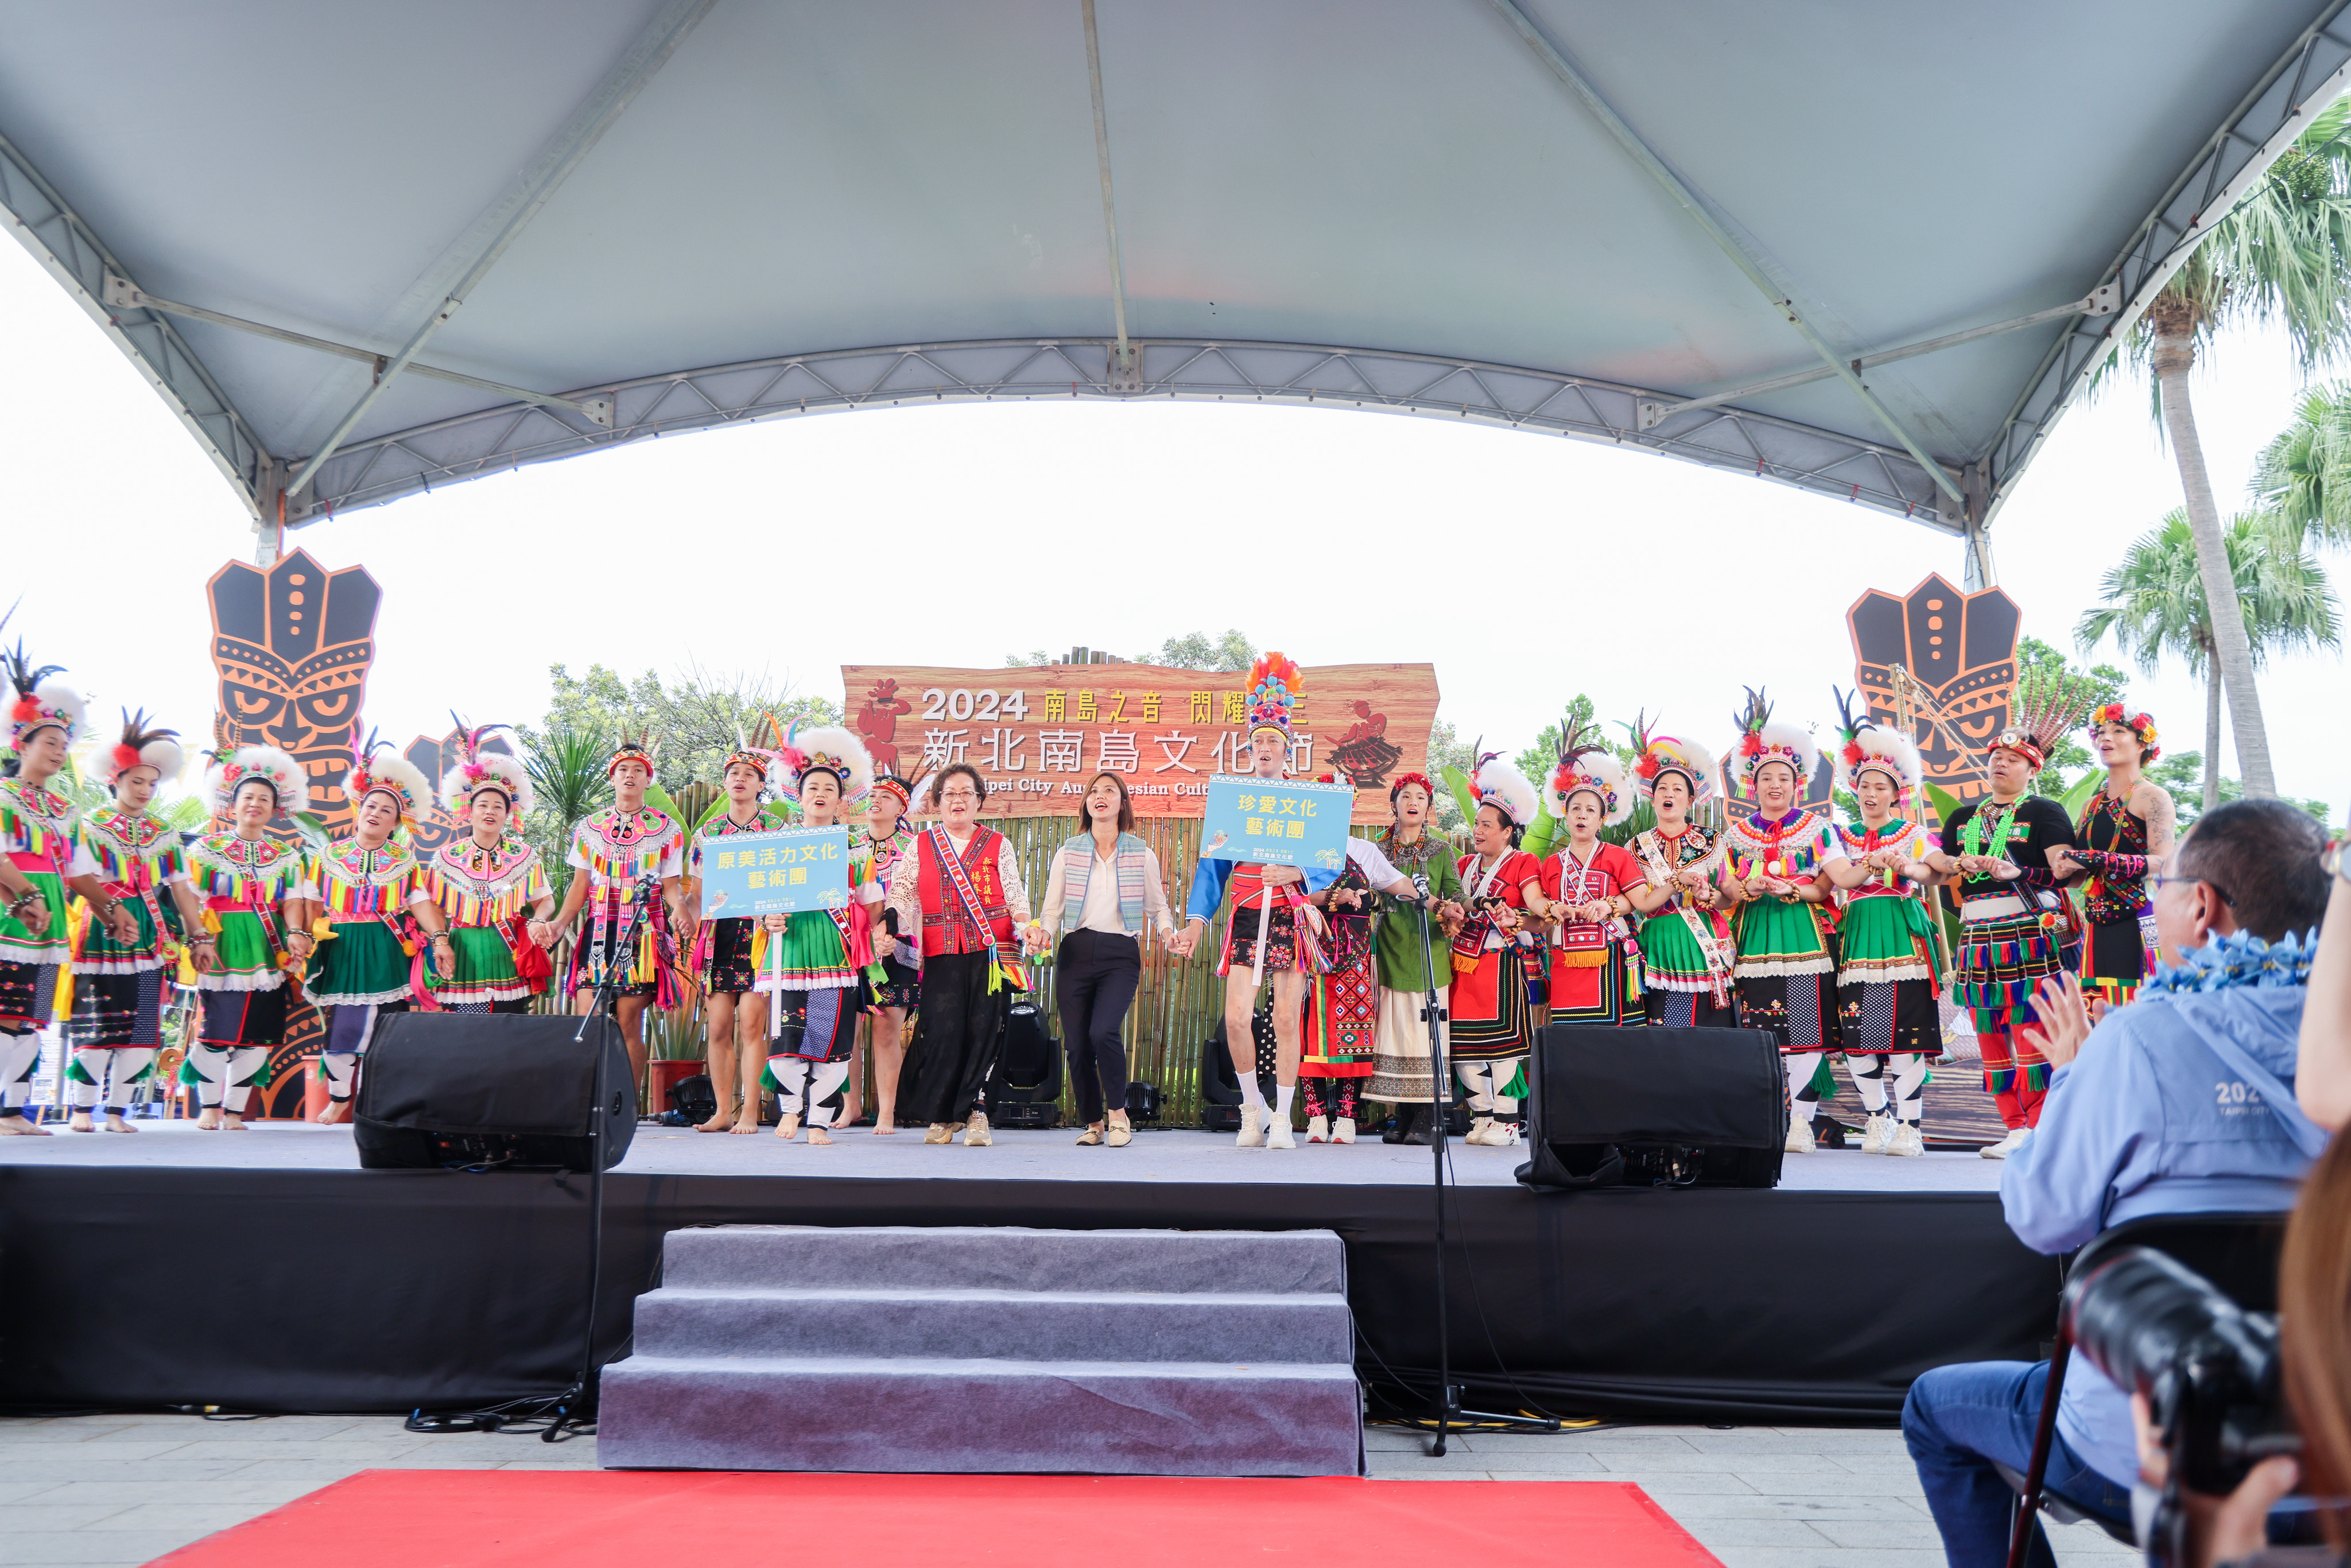 2024南島文化節由國內外南島語族團隊帶來精采演出